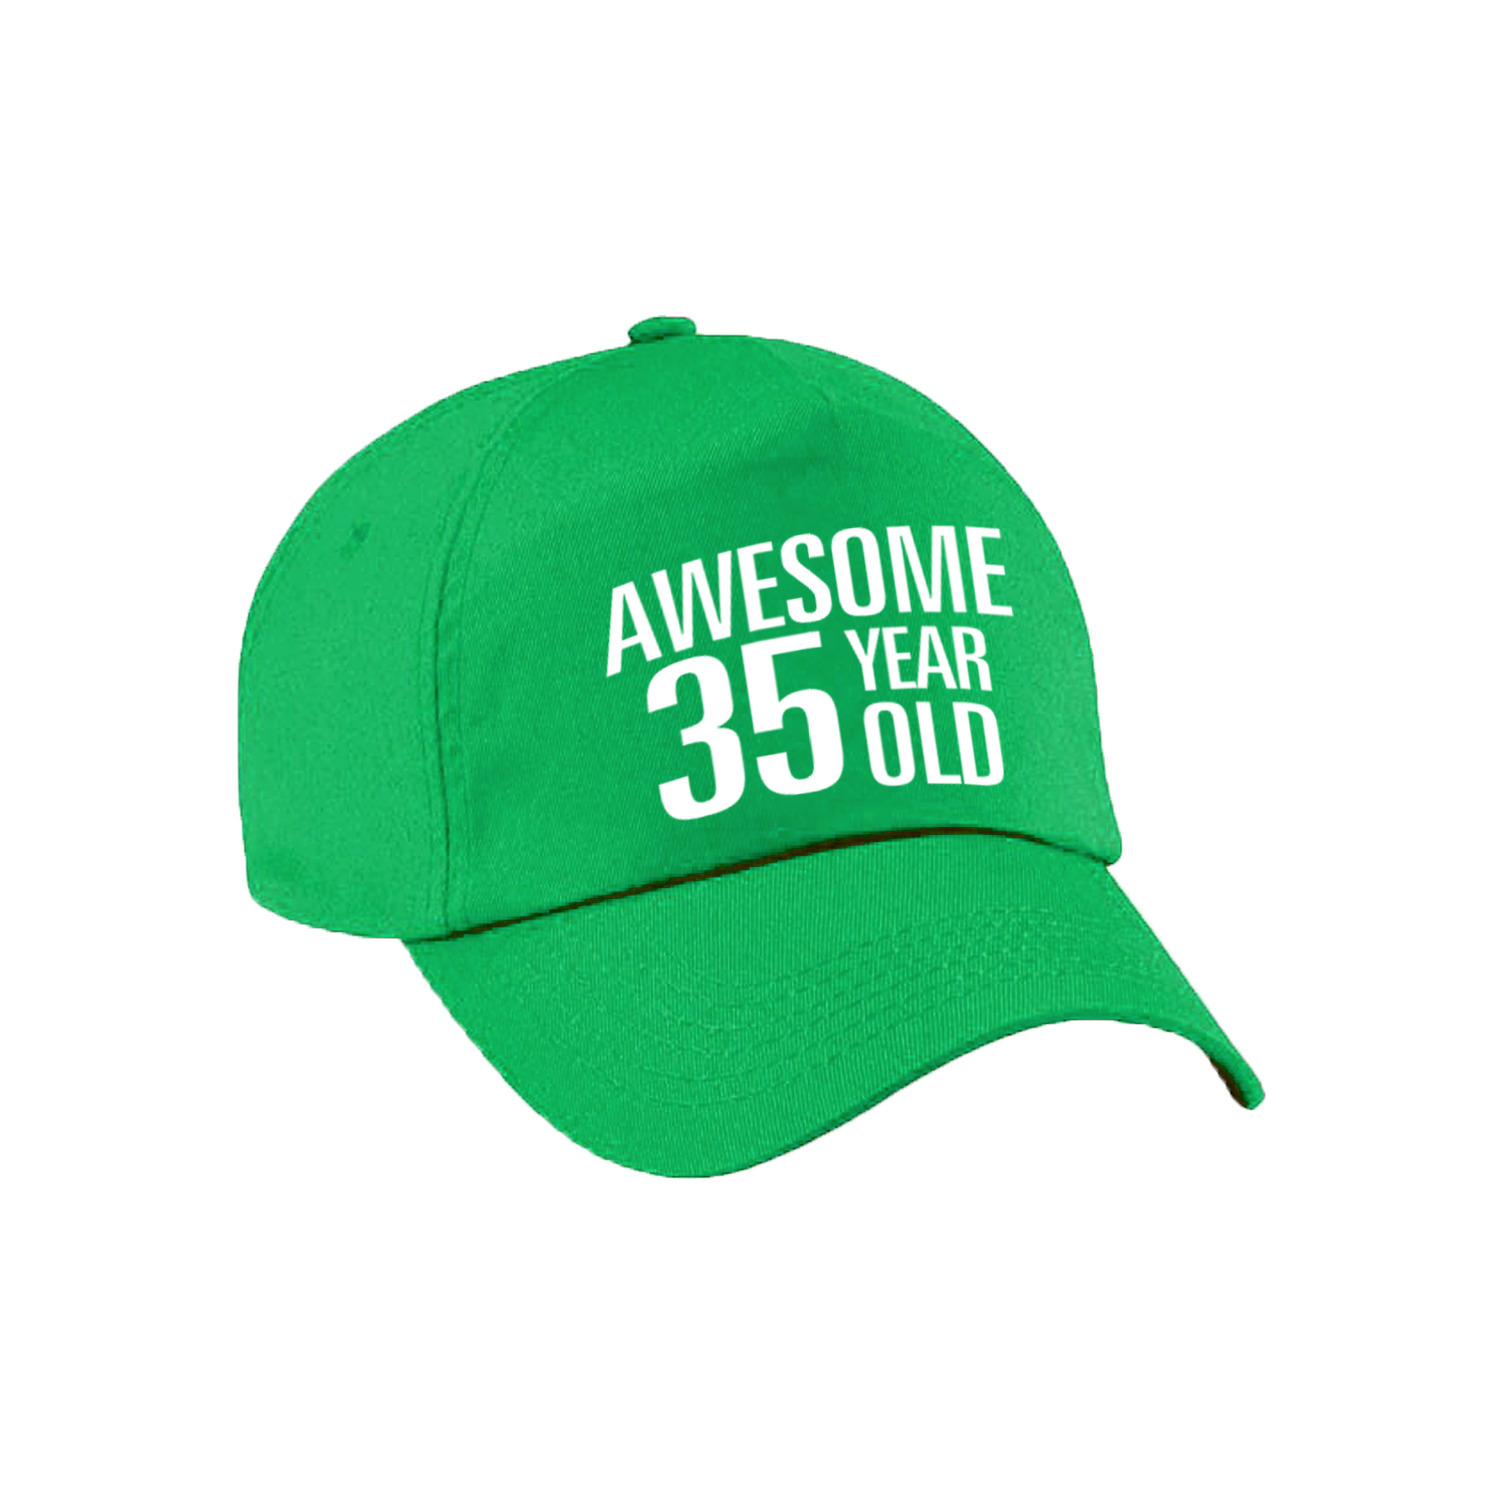 Awesome 35 year old verjaardag pet - cap groen voor dames en heren